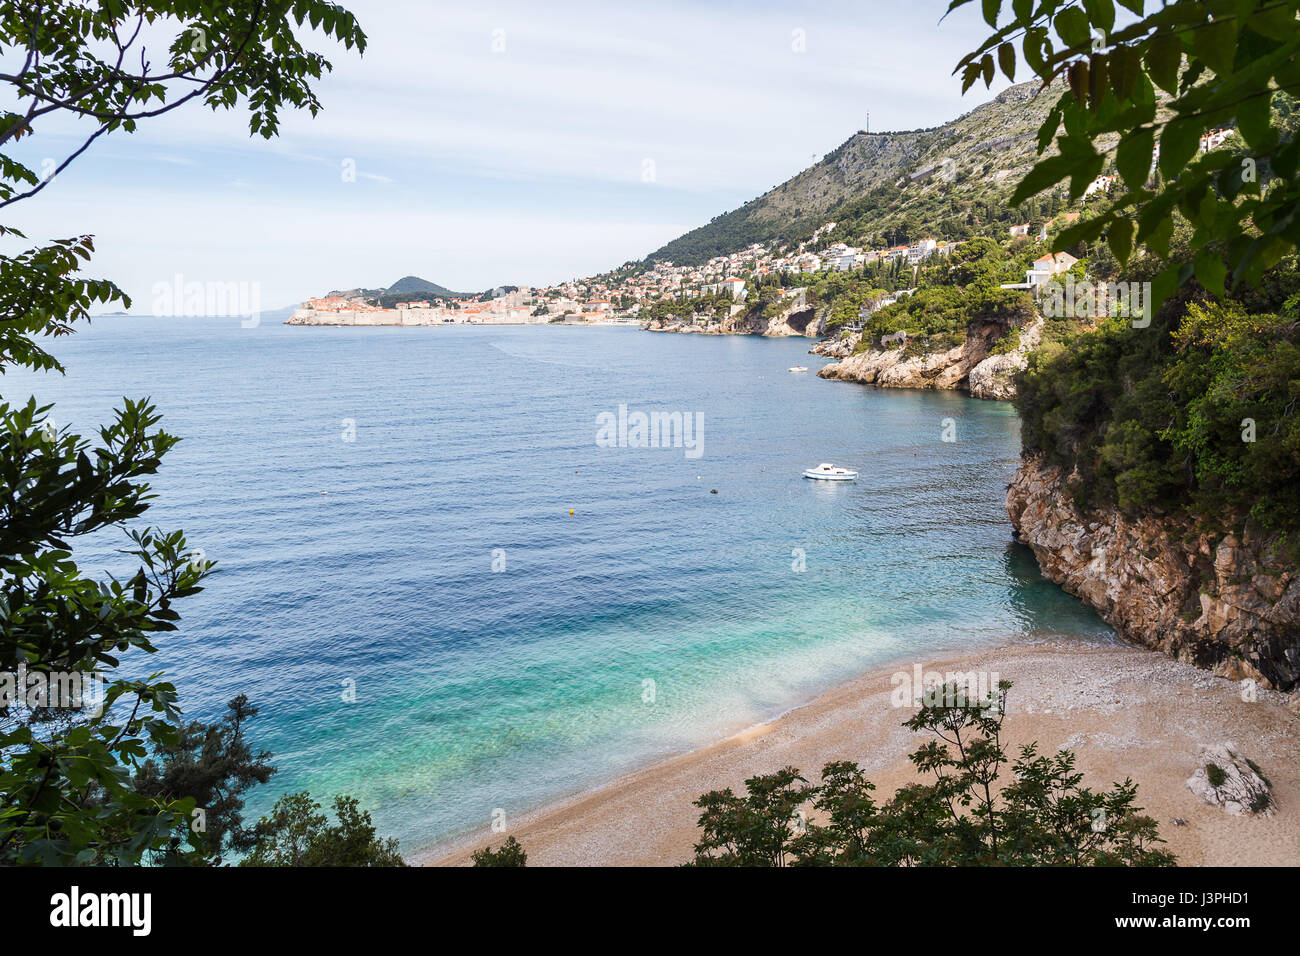 Jusqu'au tour des vagues contre les rives de Sveti Jakov, une plage isolée prise en sandwich entre les rochers en face de la ville de Dubrovnik. Banque D'Images